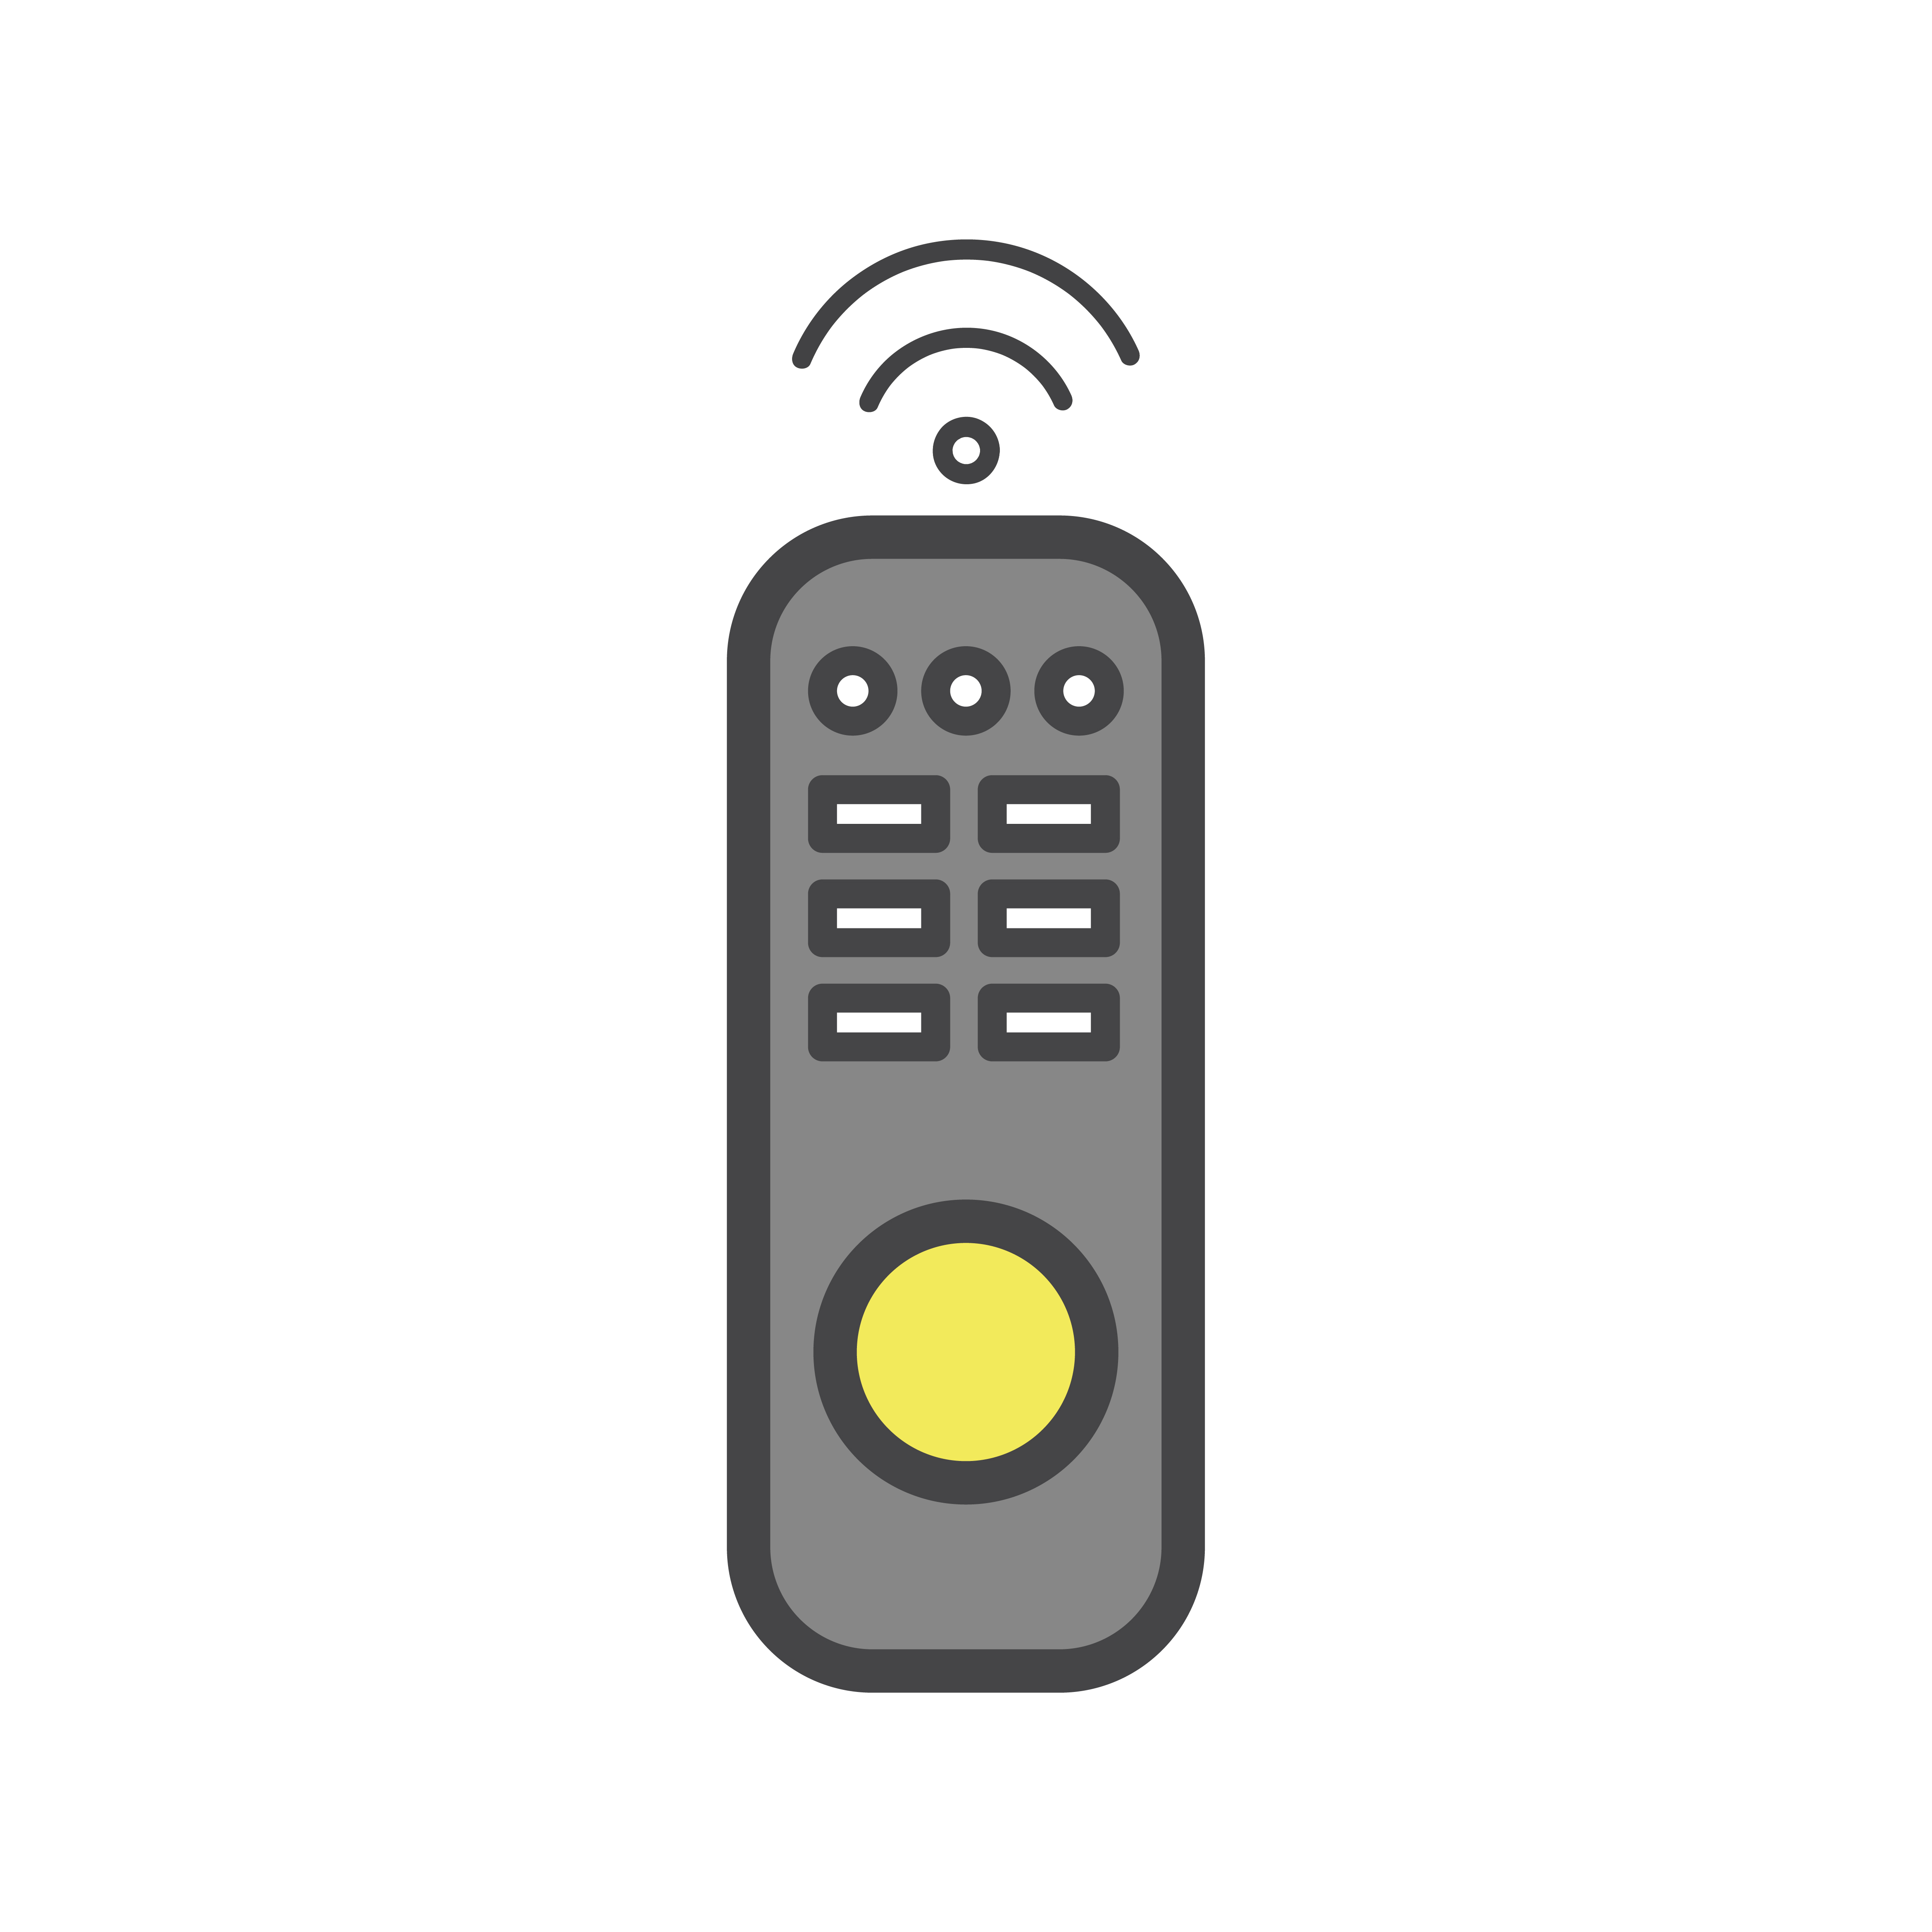 plex media player remote control